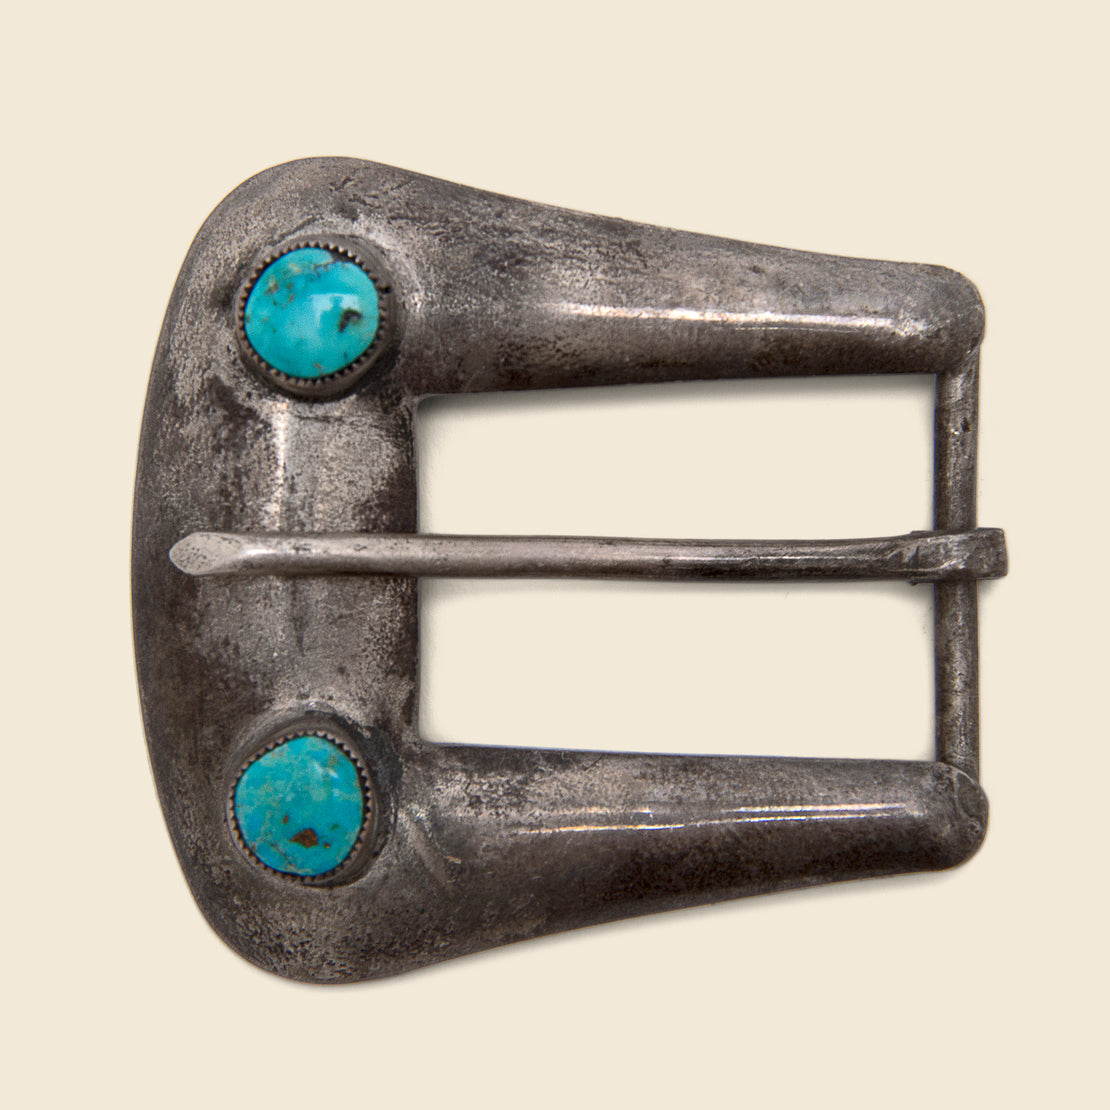 Vintage Turquoise Belt Buckle - Sterling Silver